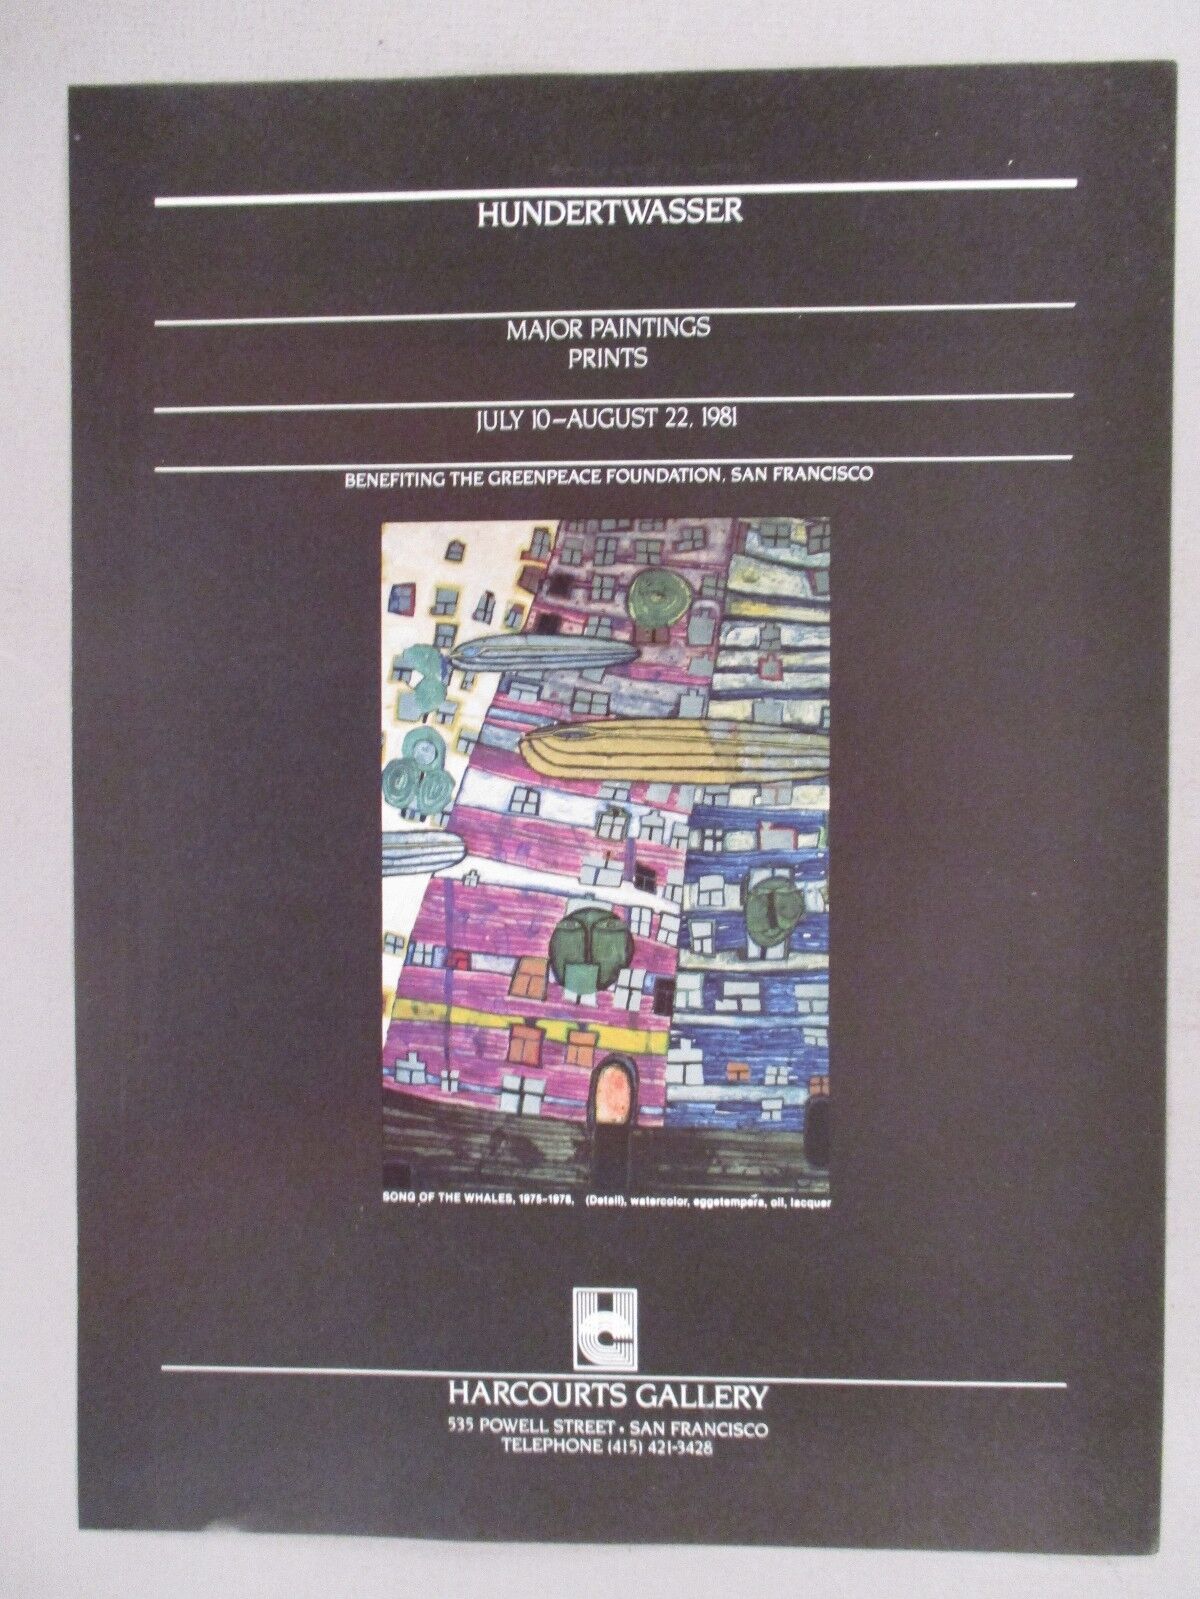 Friedensreich Hundertwasser Art Gallery Exhibit PRINT AD - 1981